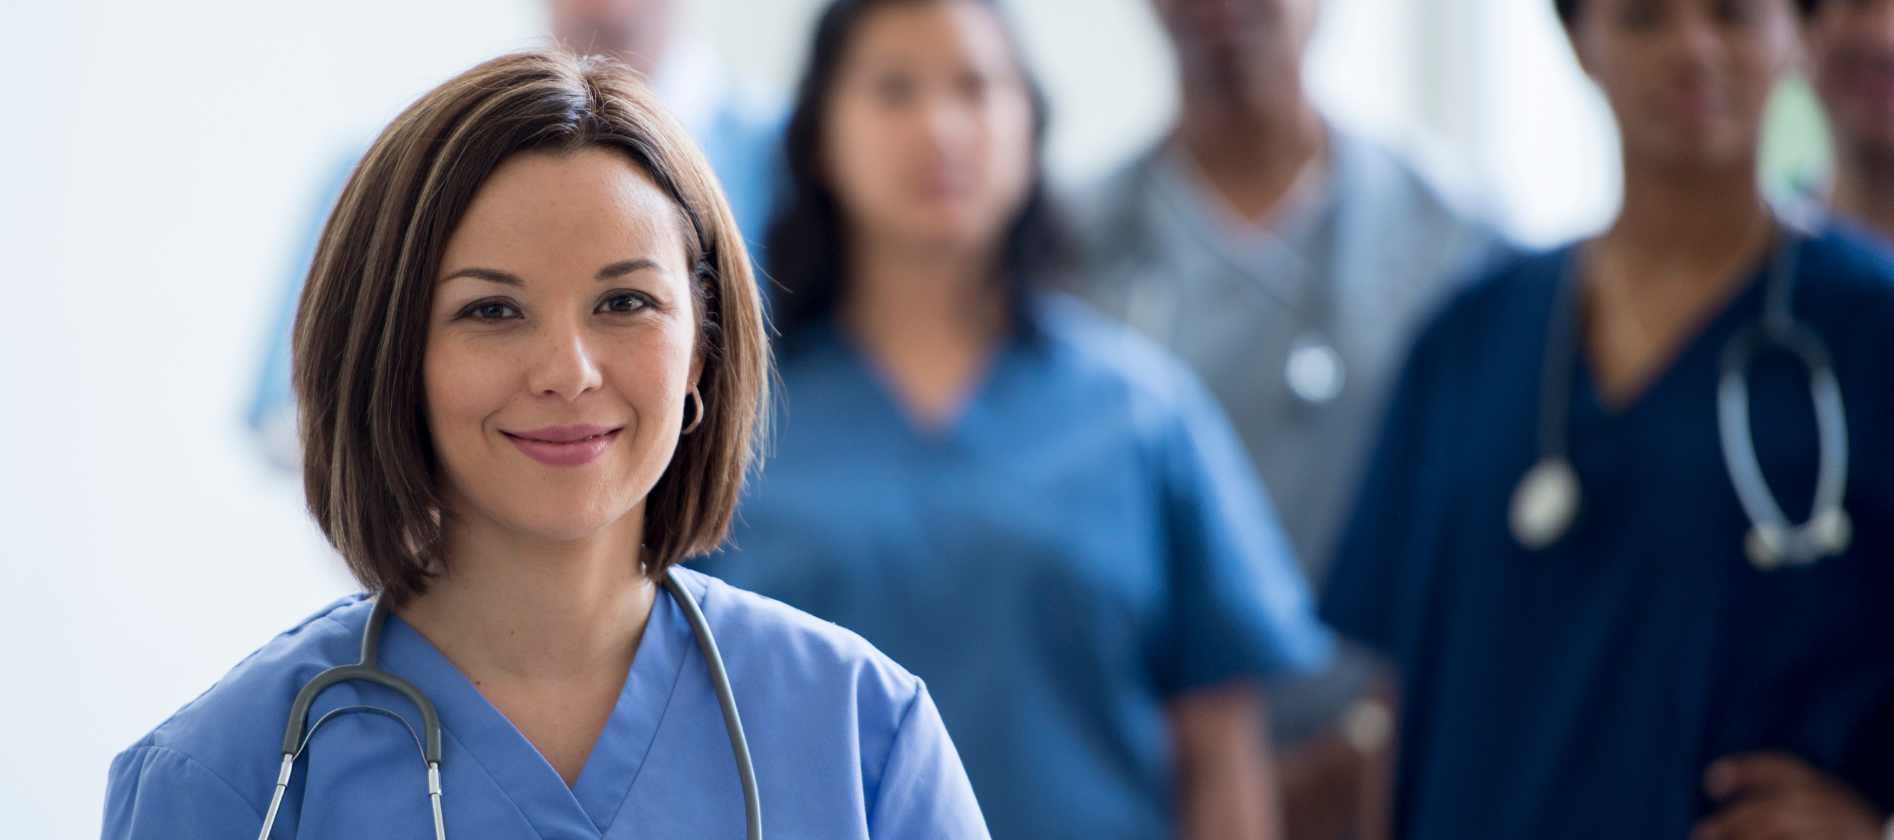 Career Consultation for Nursing Professionals